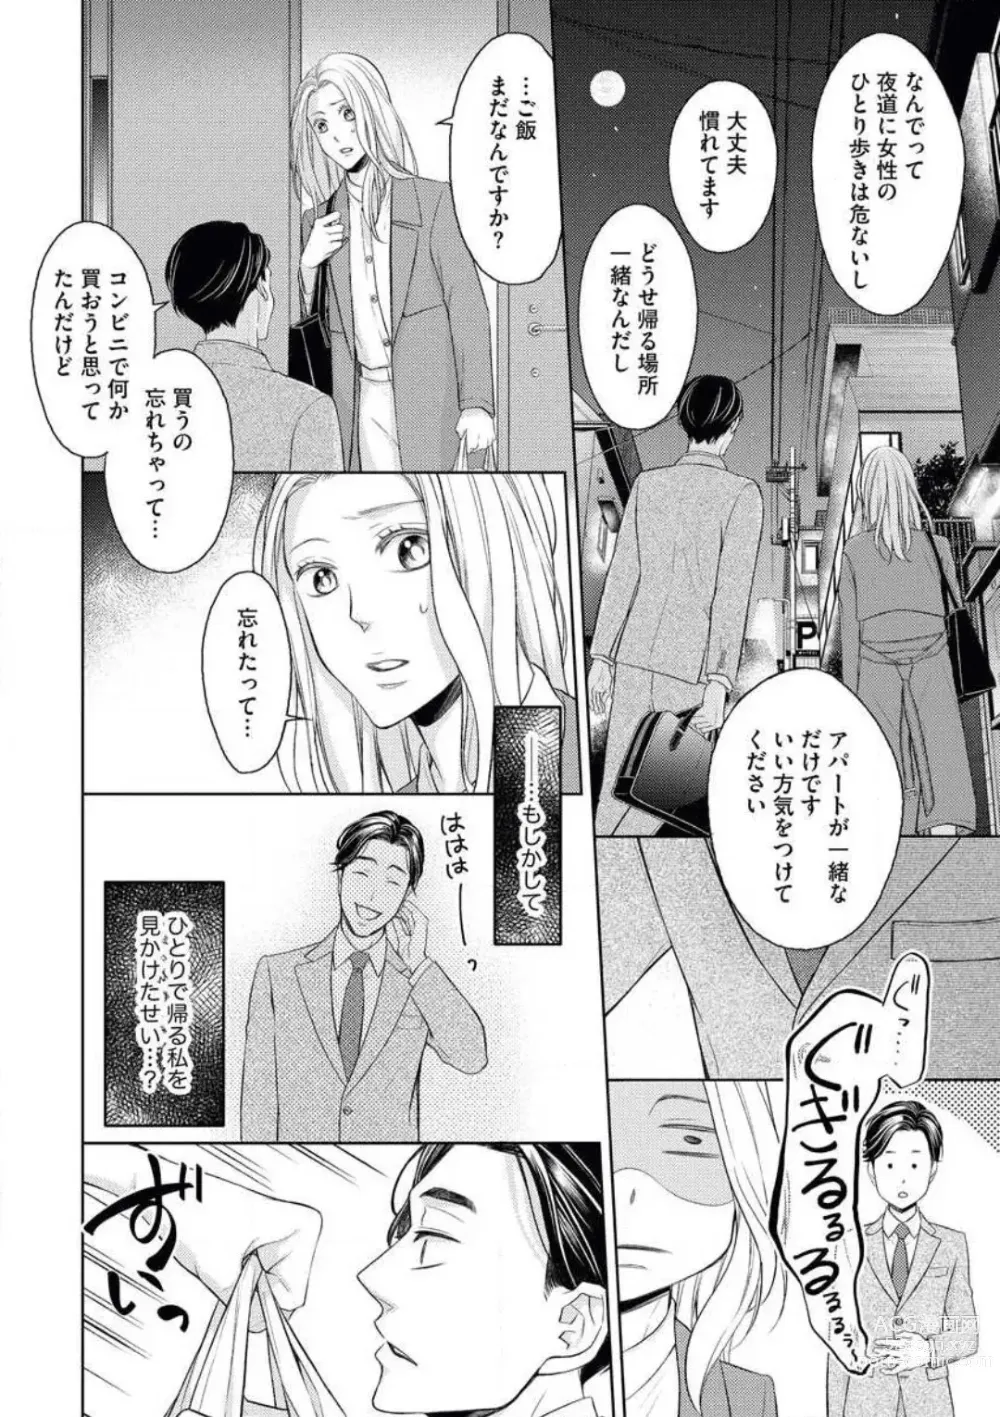 Page 12 of manga Mitsu Koi Maisonette